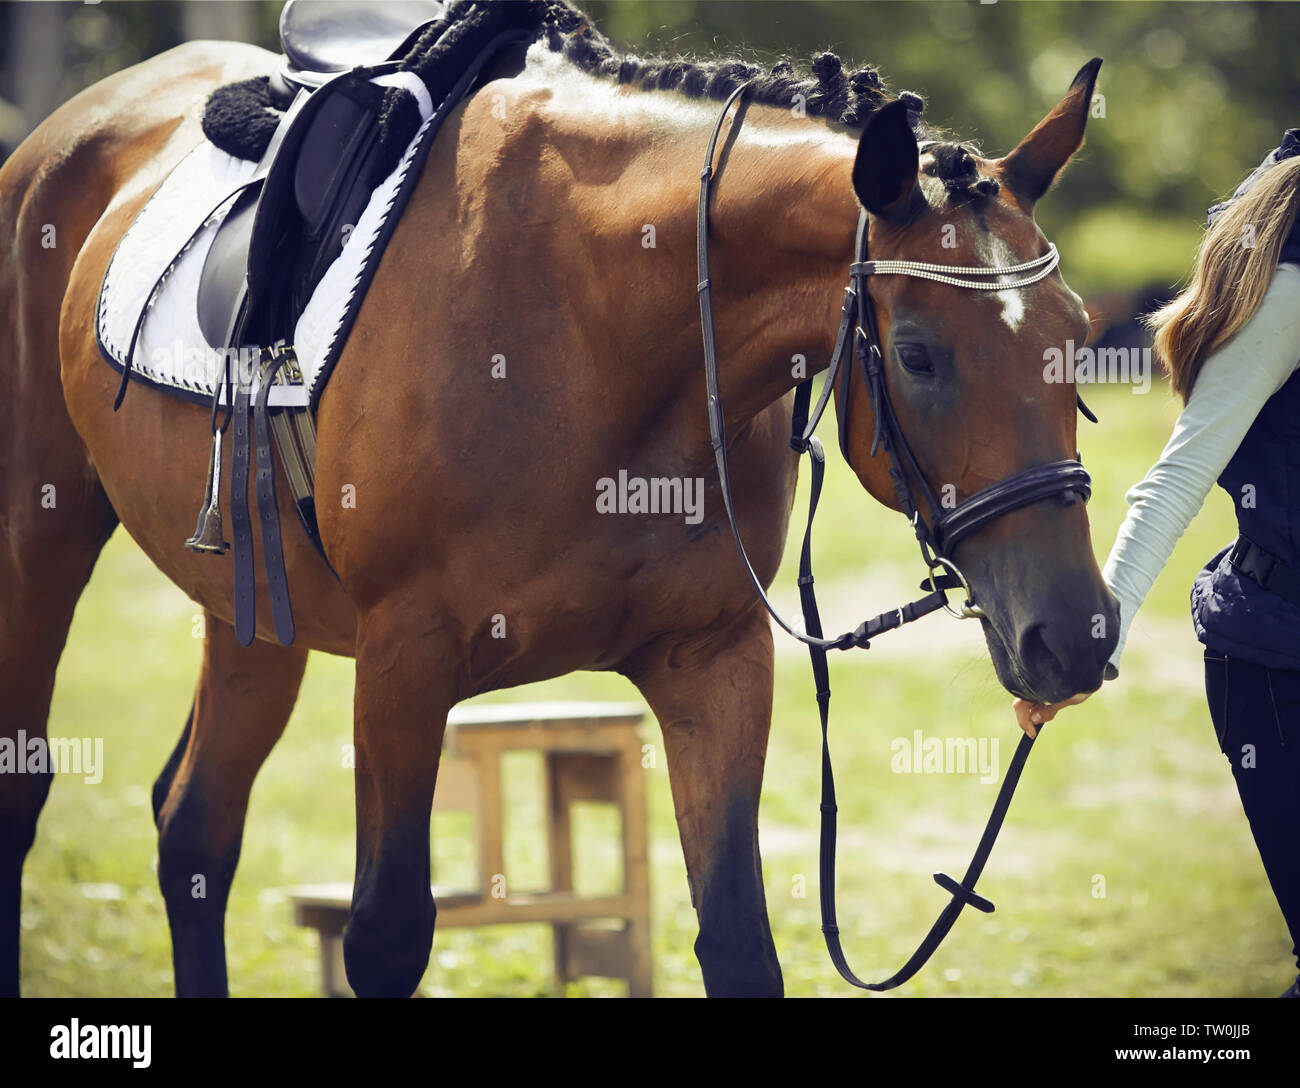 Mädchen Reiter führt einen Zaum Bay Horse, in Munition für Dressur und Pferdesport gekleidet, an einem sonnigen Sommertag Stockfoto